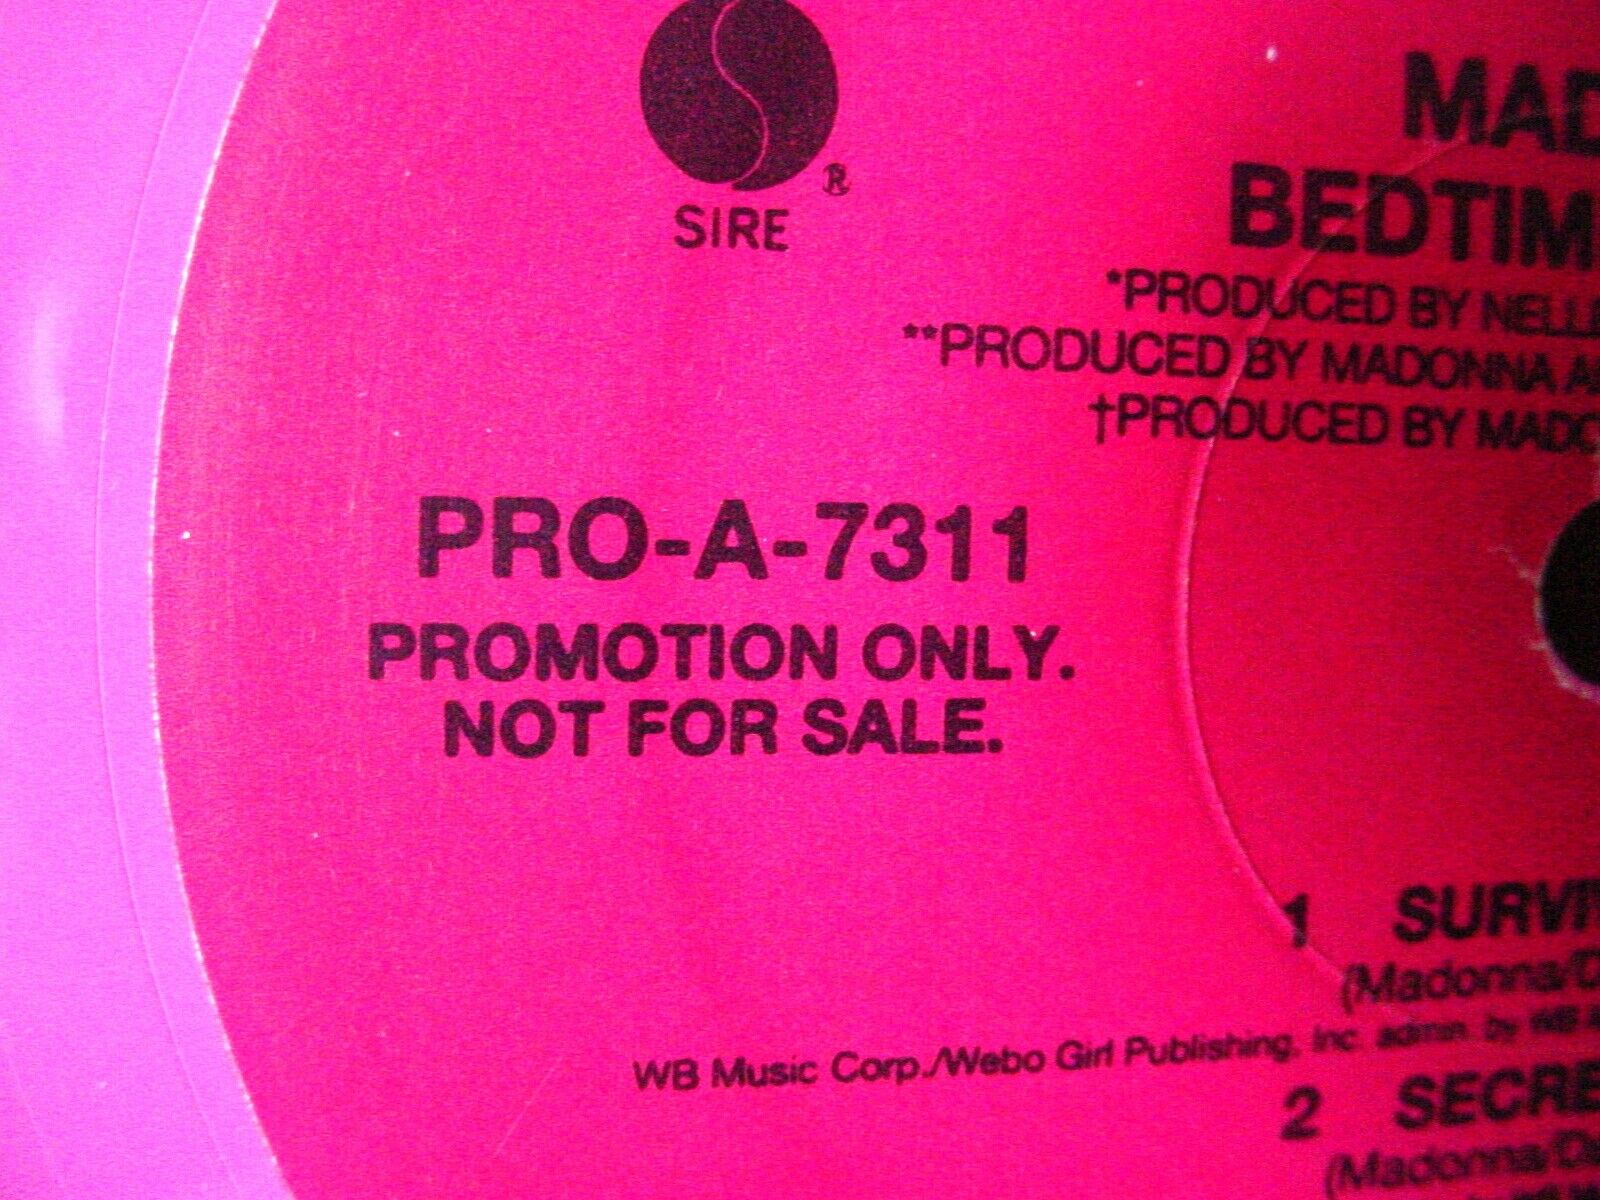  MADONNA Bedtime Stories PROMO PINK VINYL Double LP 1994  MAVERICK SIRE PRO-A-7311 - auction details